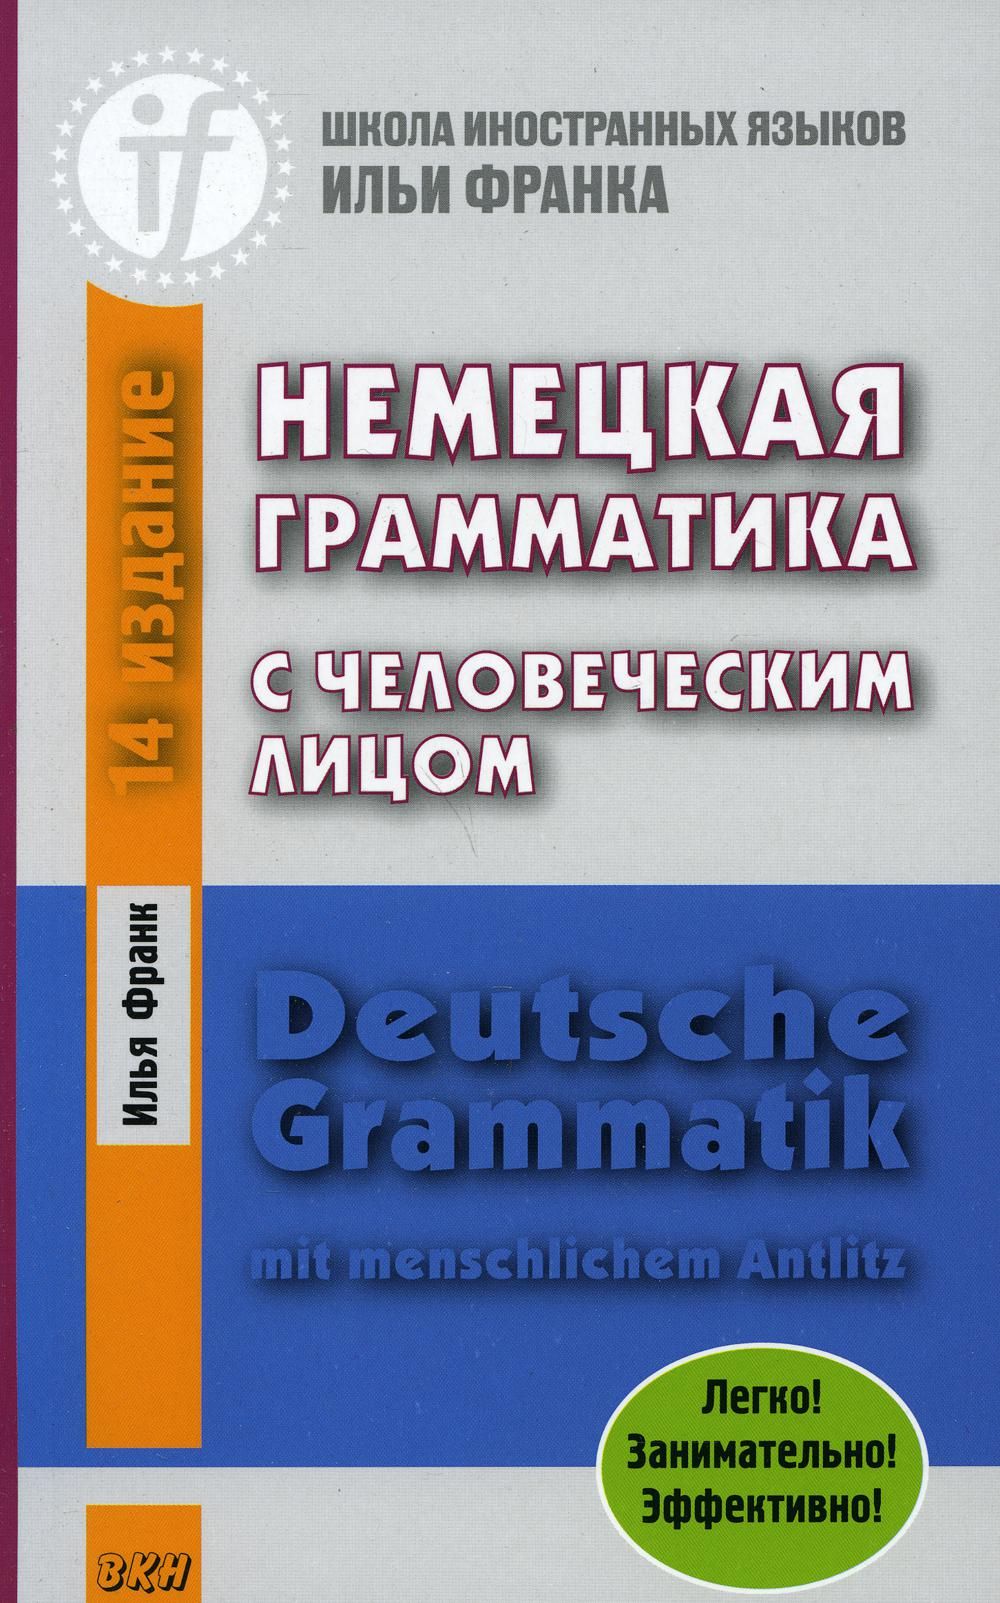 Deutsche grammatik. Немецкая грамматика с человеческим лицом книга. Грамматика немецкого языка учебник.